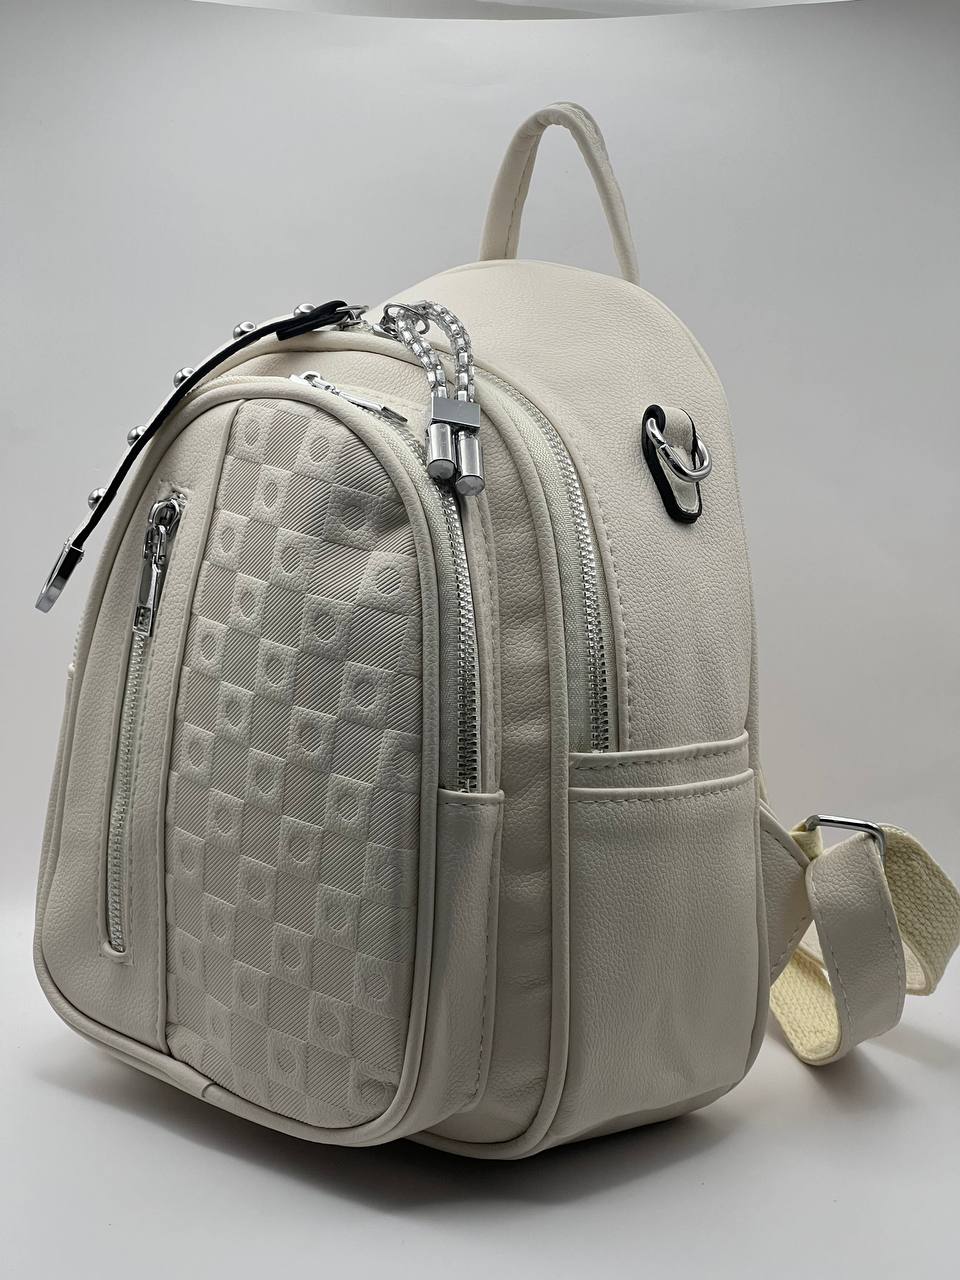 Сумка-рюкзак женская SunGold Р-92001 молочная, 27х22х12 см